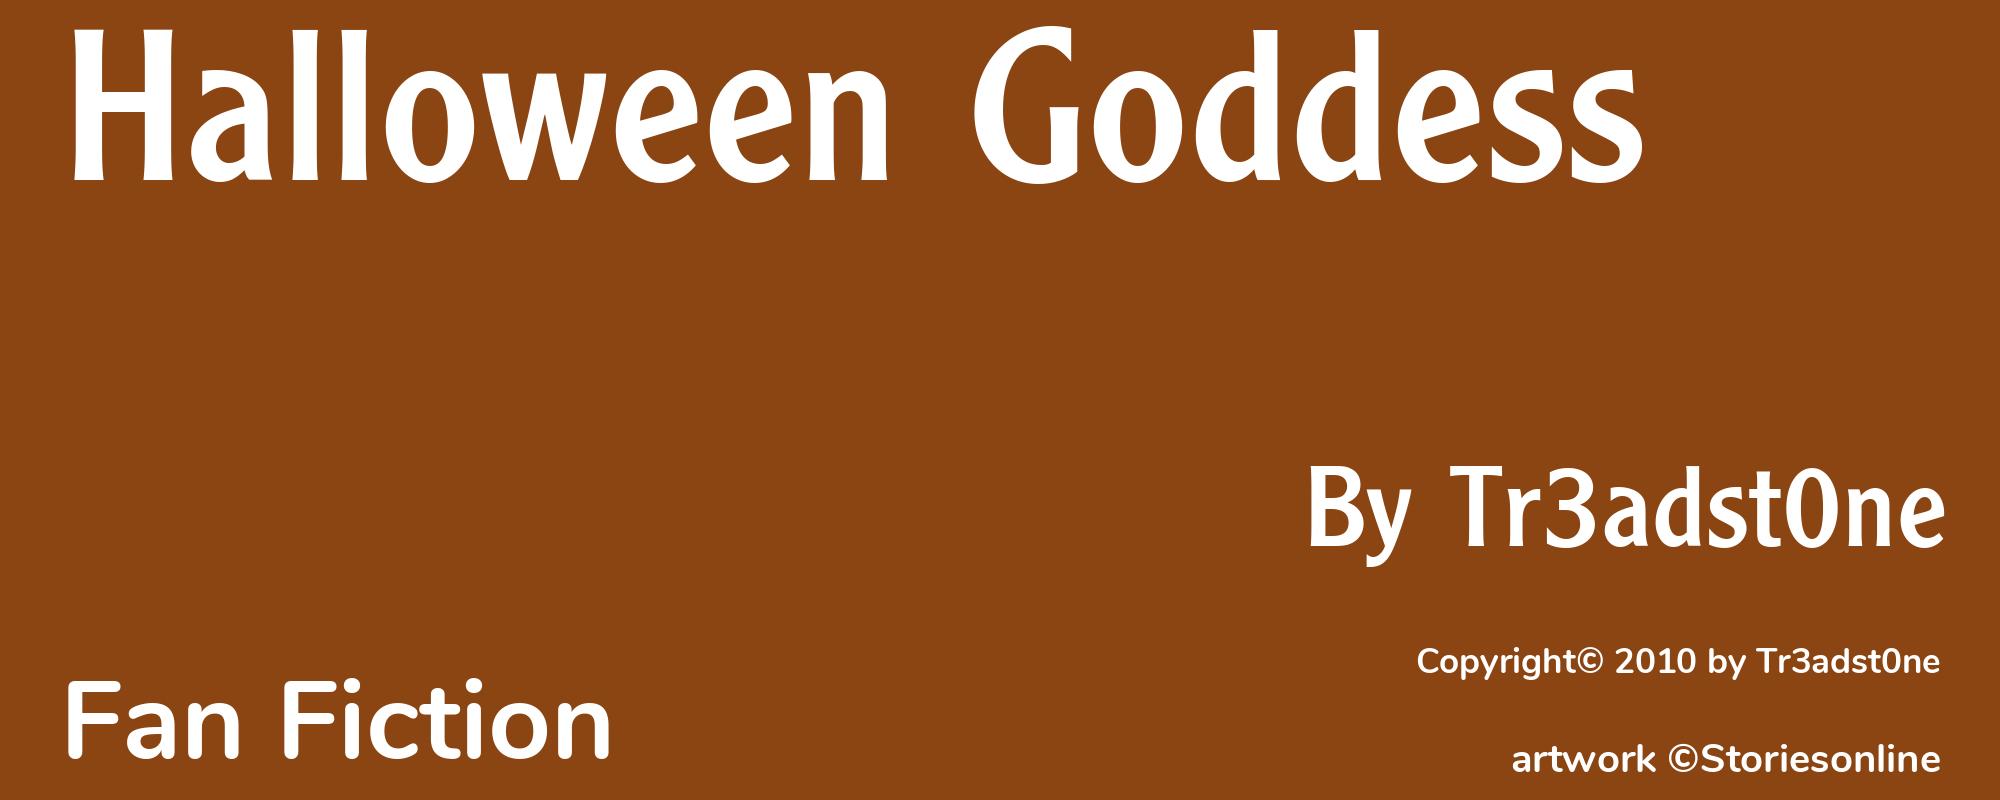 Halloween Goddess - Cover